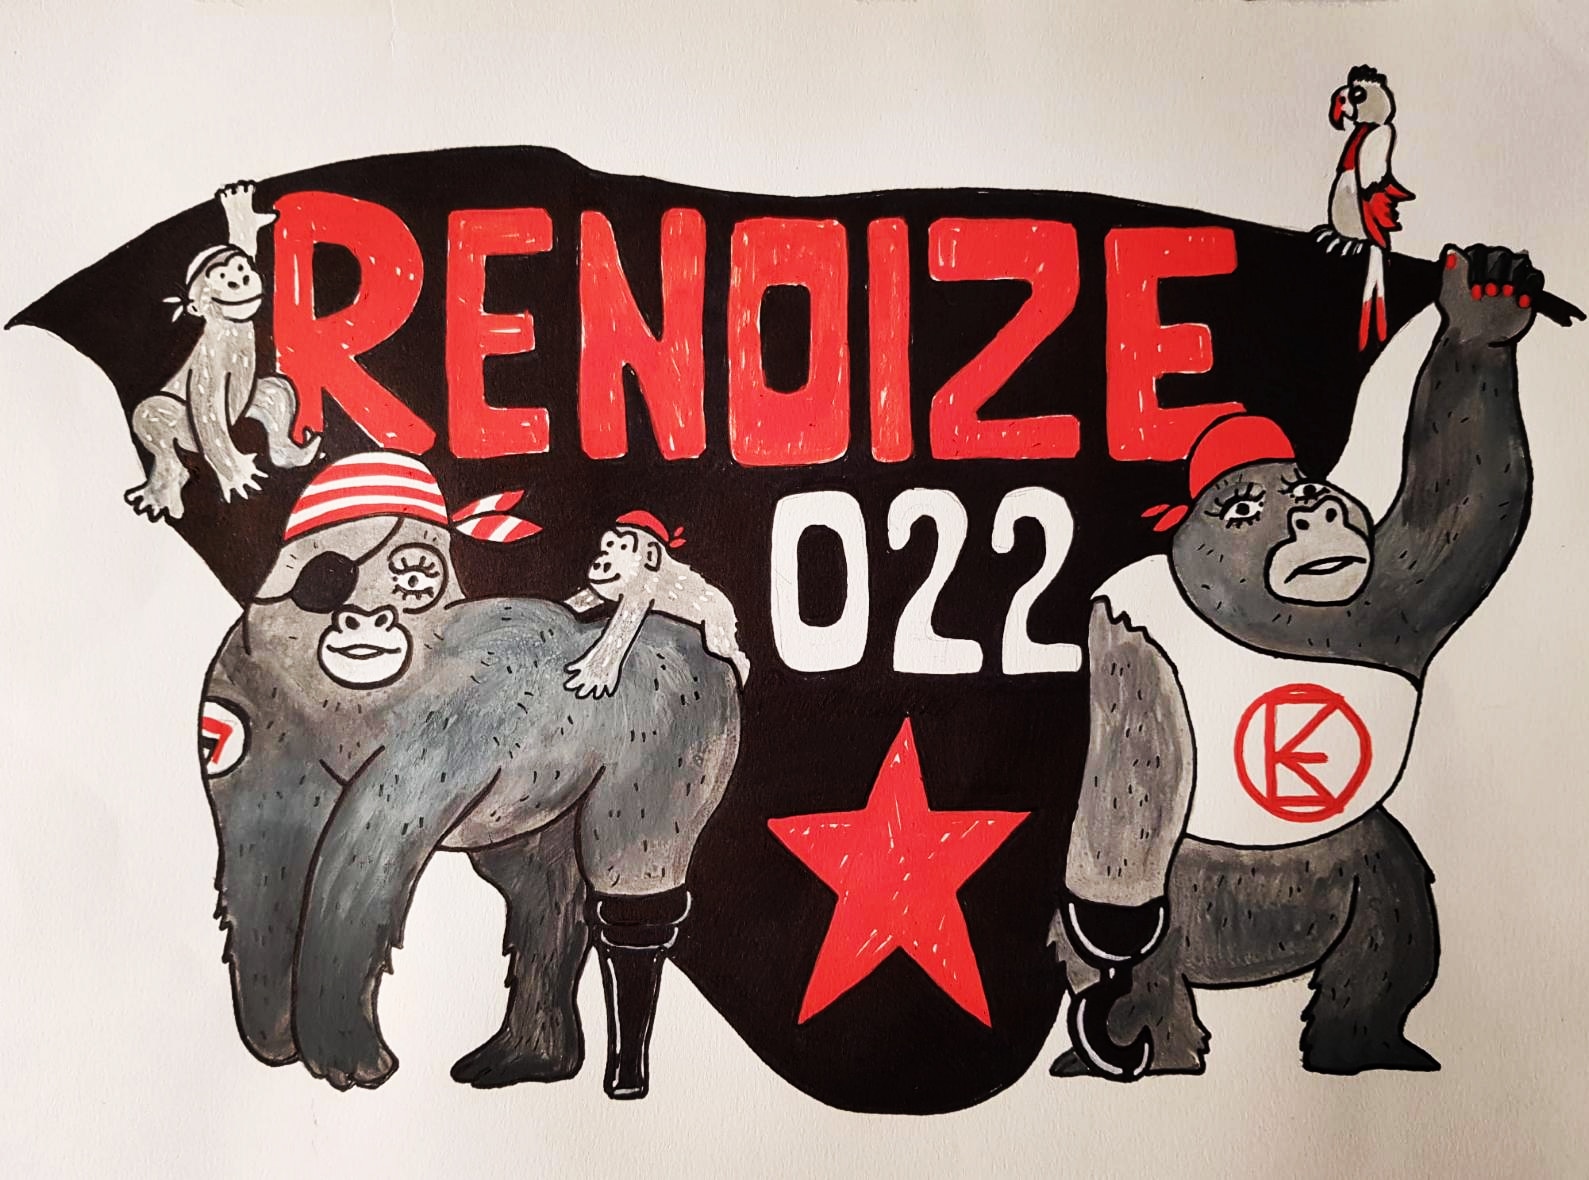 Renoize2022